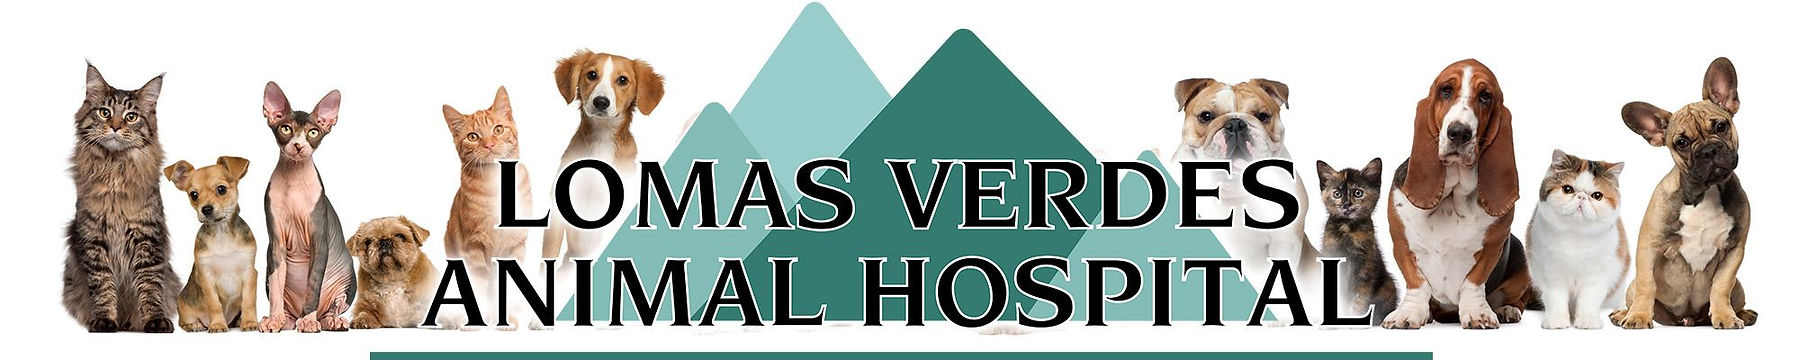 Servicios veterinarios - Lomas Verdes Animal Hospital